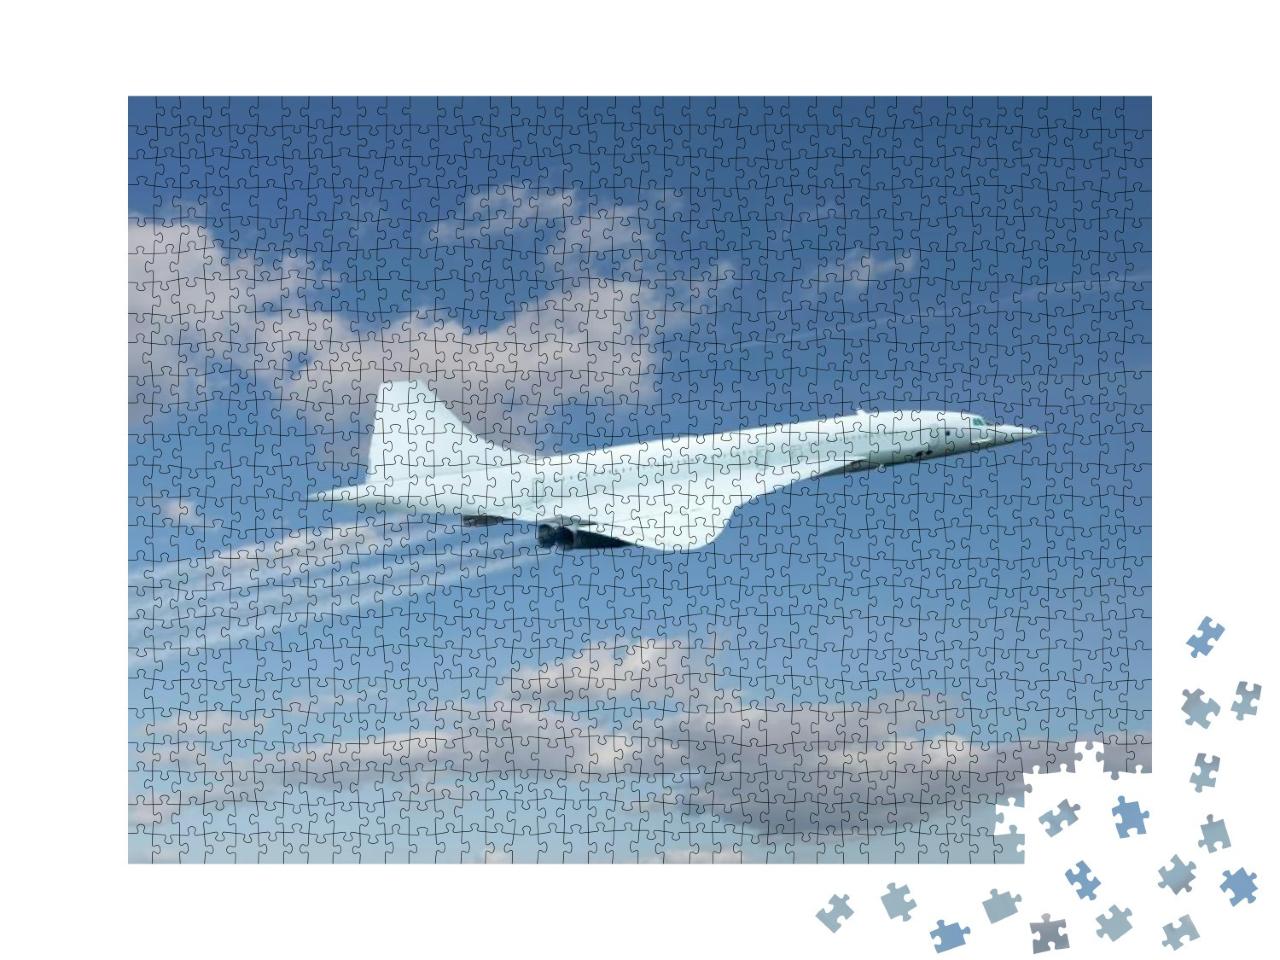 Puzzle 1000 Teile „Concorde im Überschallflug“